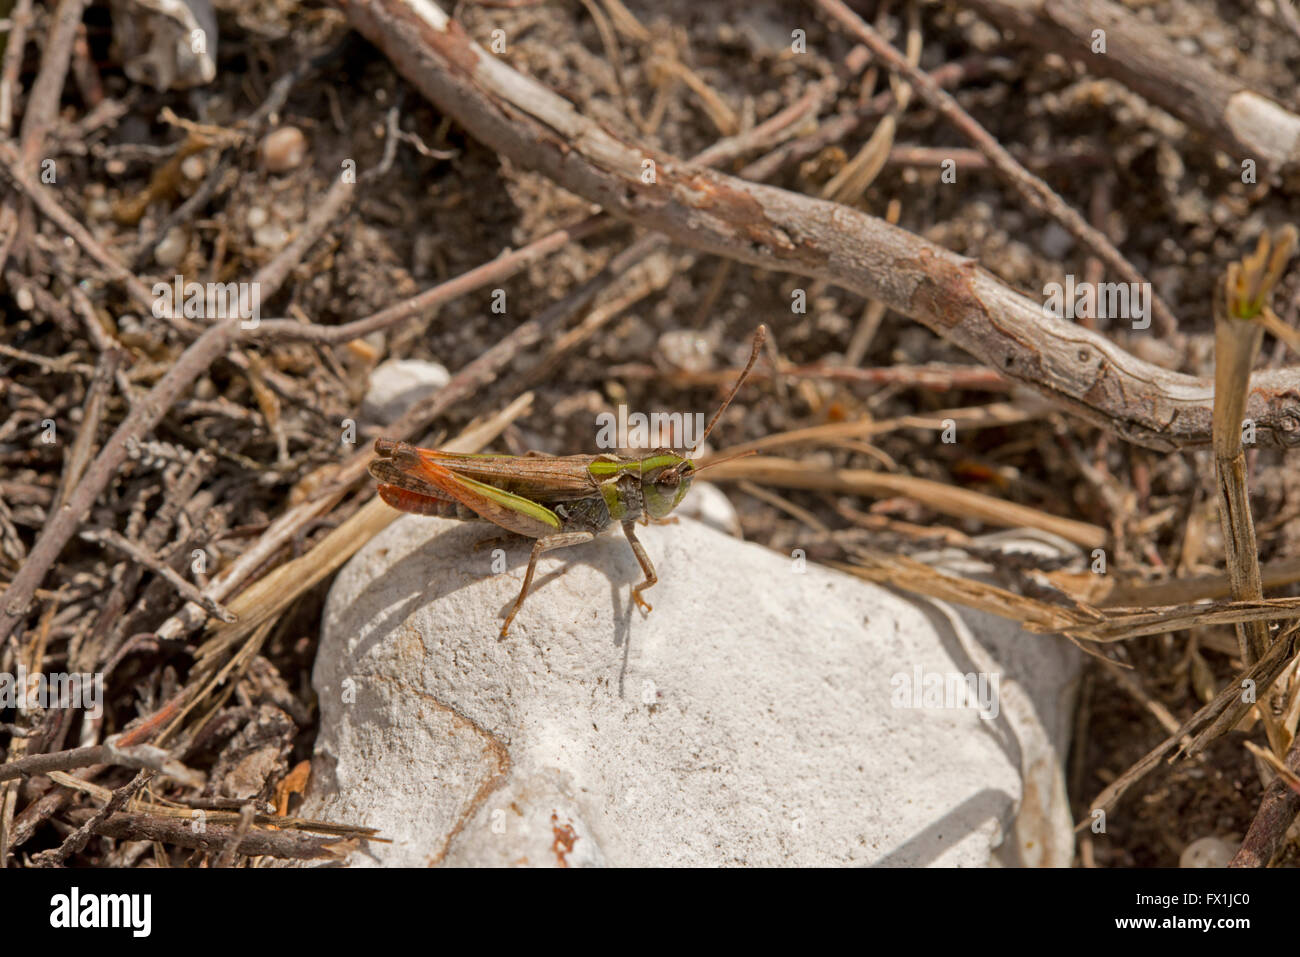 Mottled Grasshopper on a stone in sunlight Stock Photo